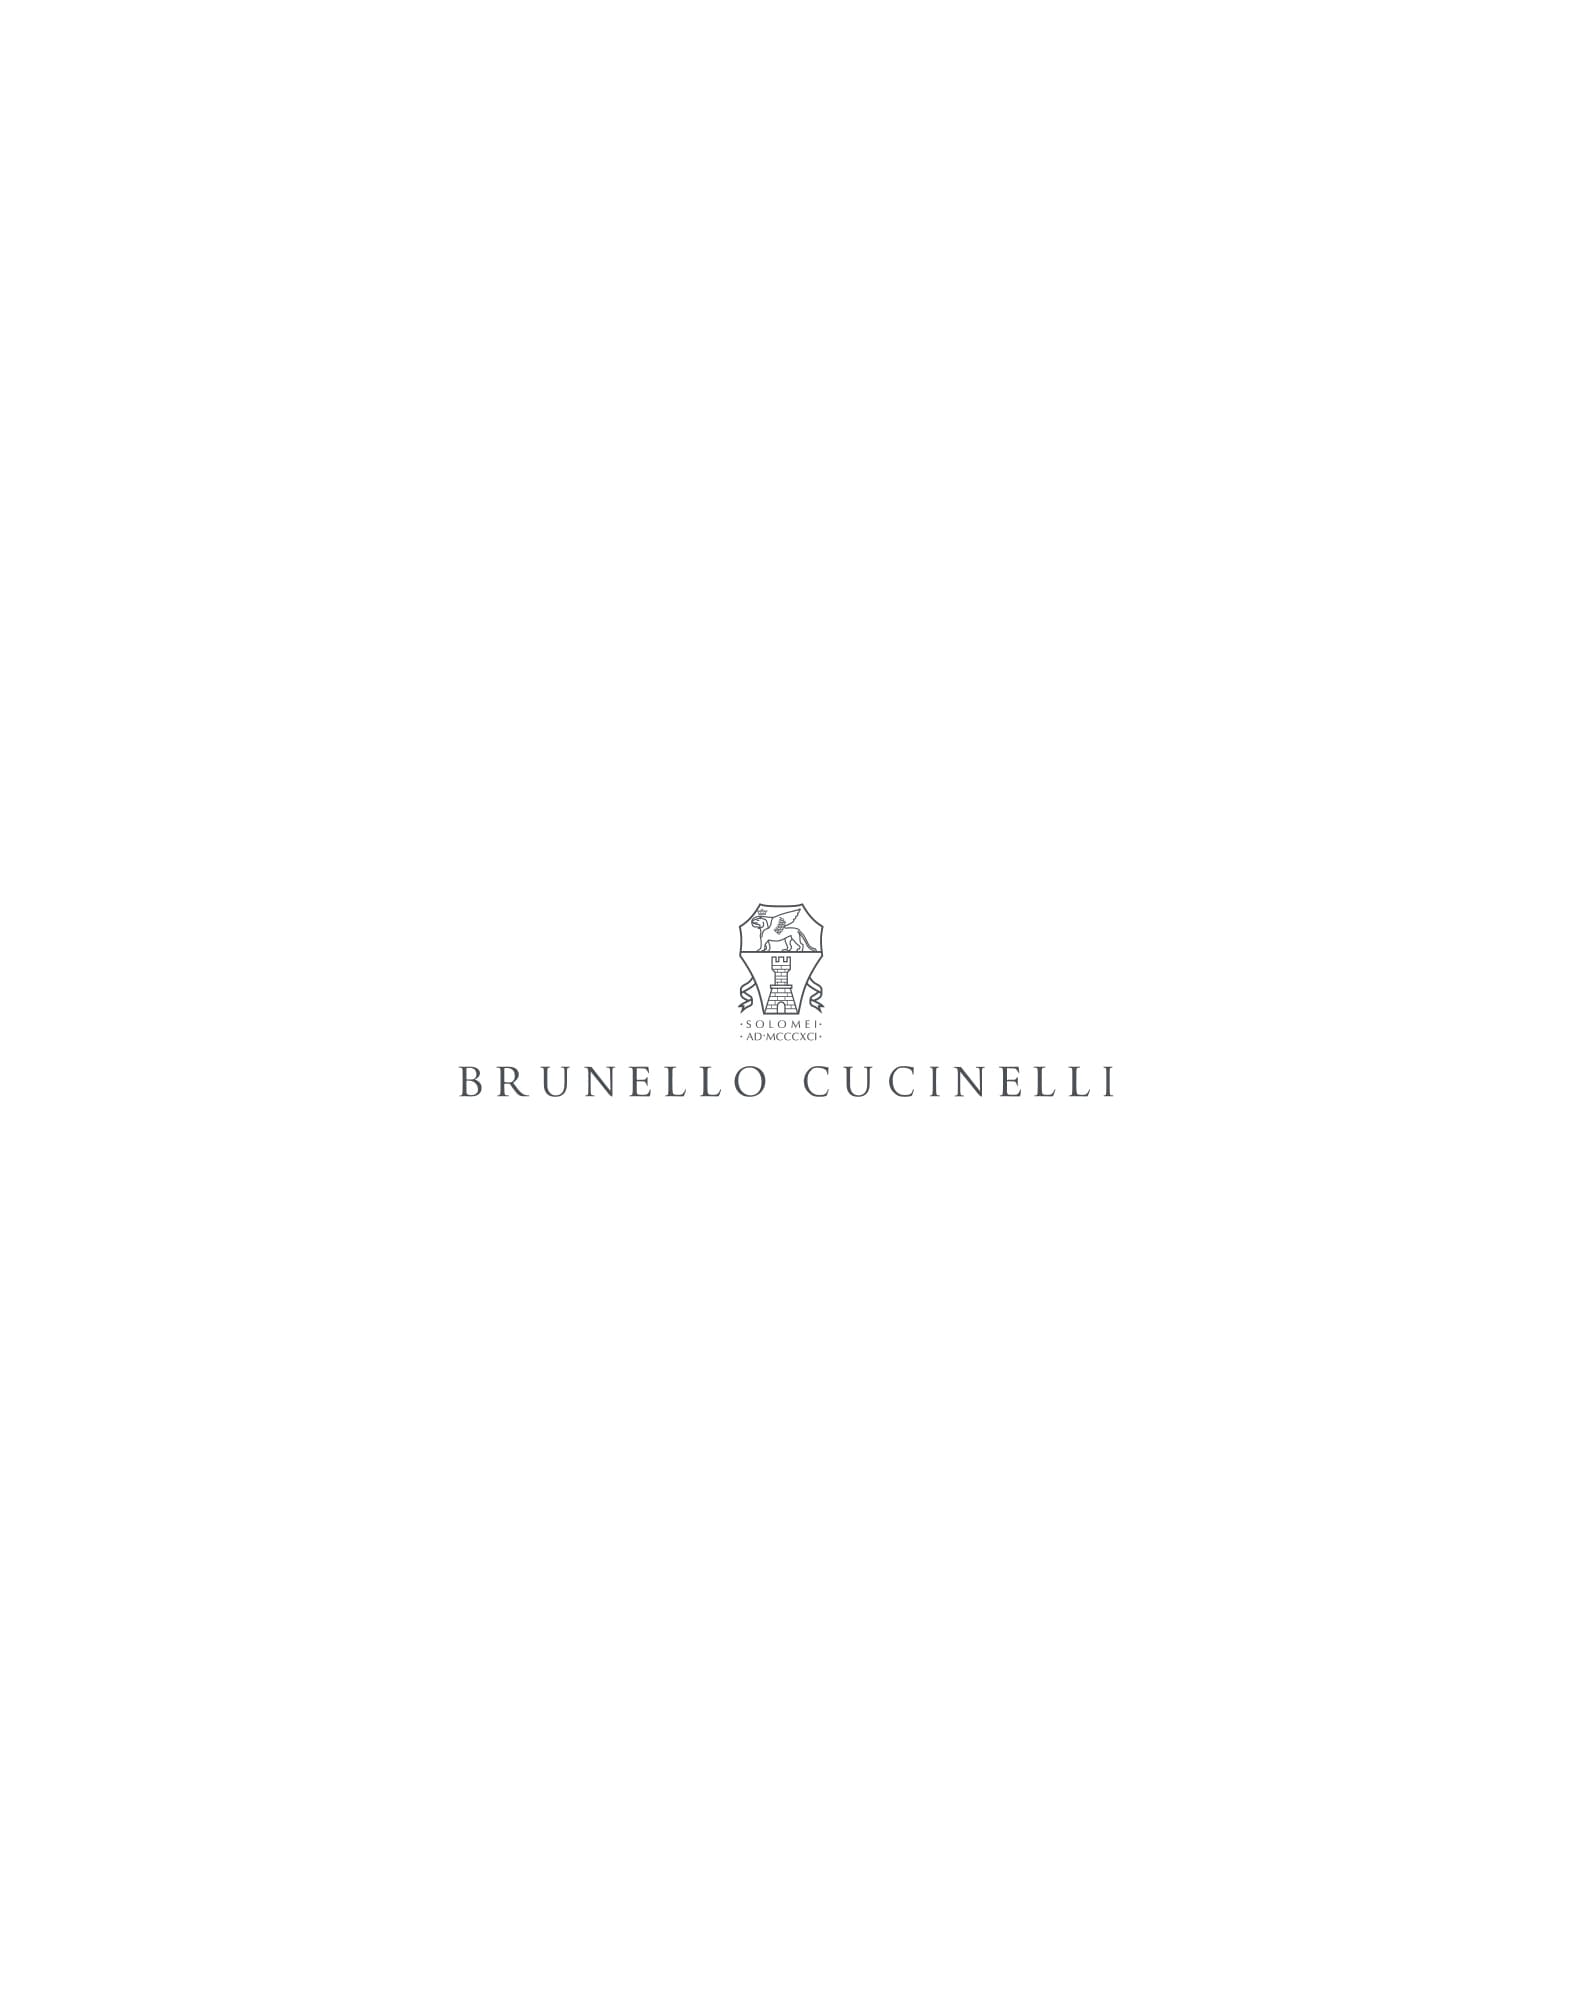 Discover Look 232HOUTFITBERNIE1B - Brunello Cucinelli